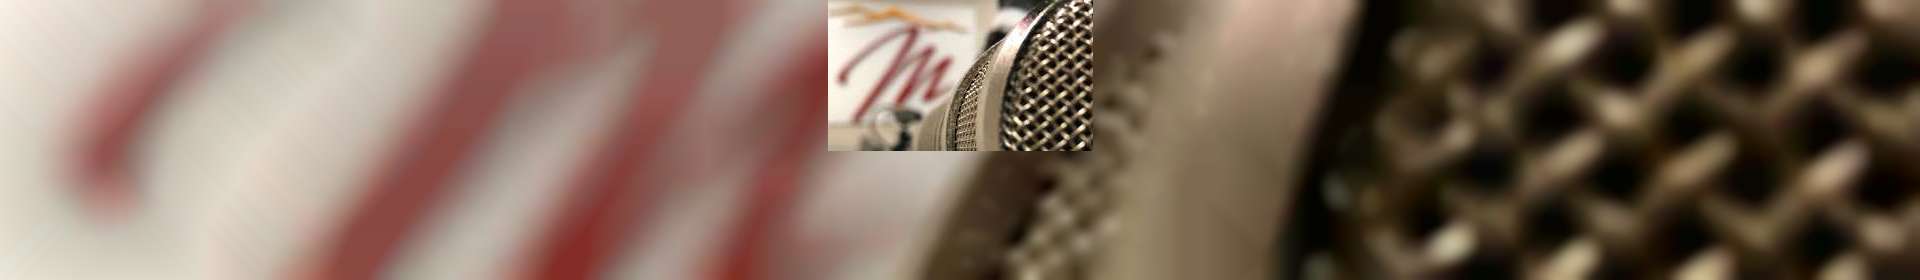 Entrevistas Rádio Maanaim - Evangelho Sem Fronteiras - 17/01/2022